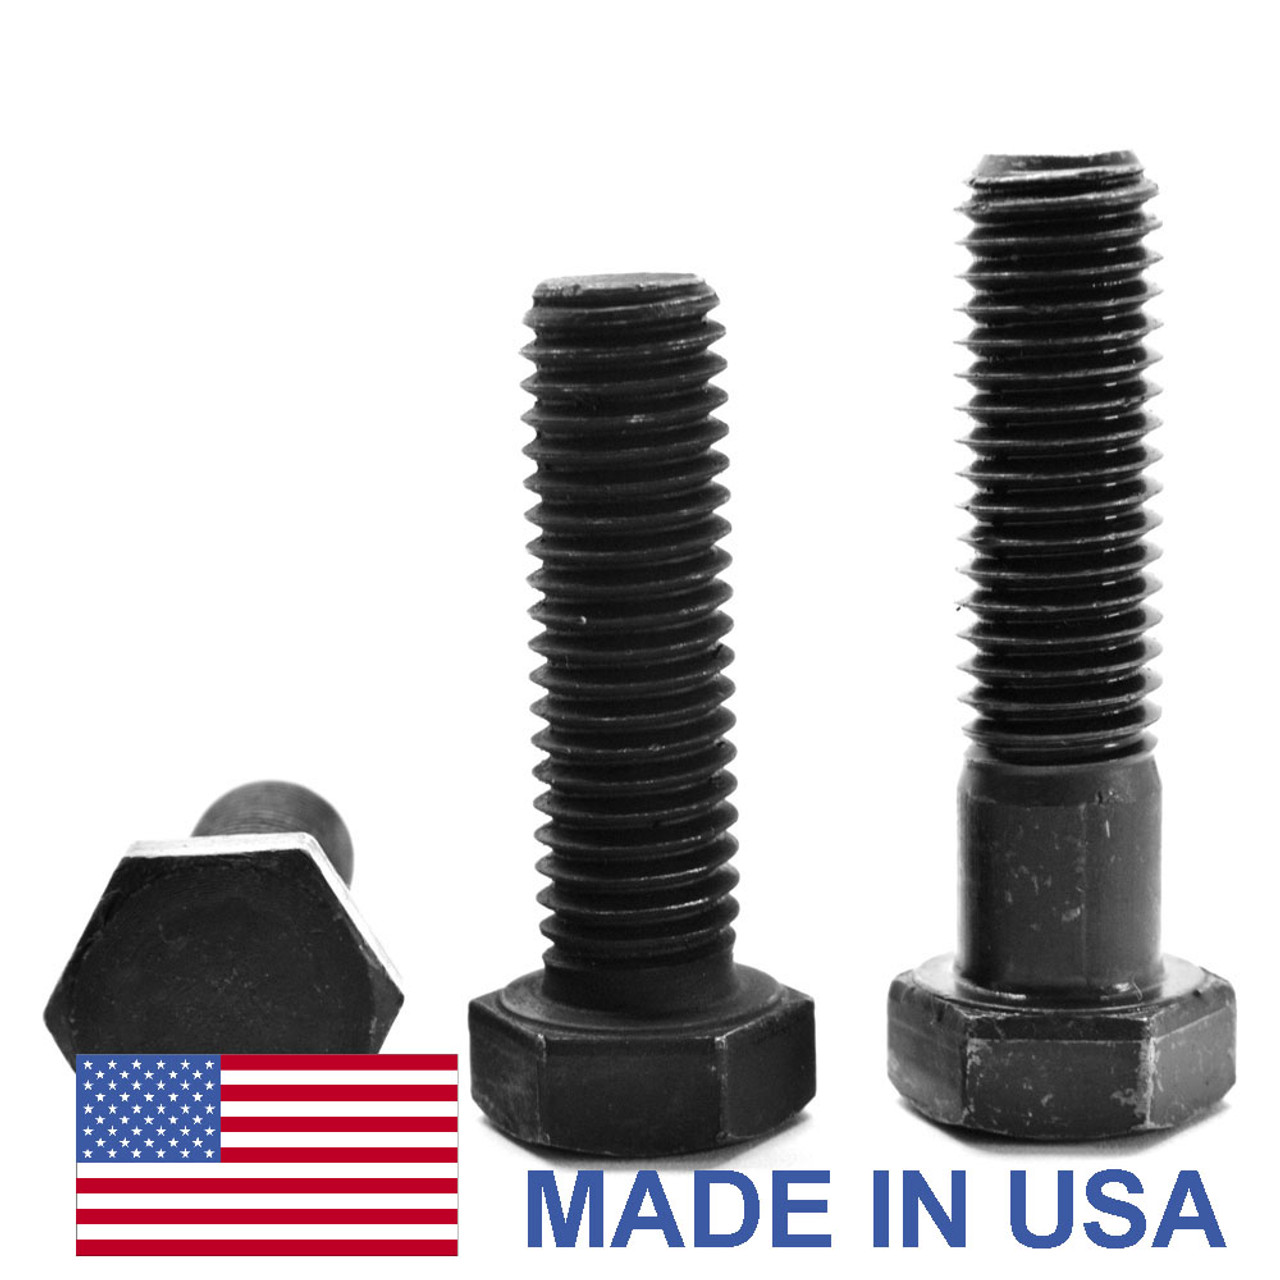 1"-14 x 1 1/2" (FT) UNS Thread Grade 5 Hex Cap Screw (Bolt) - USA Medium Carbon Steel Black Oxide